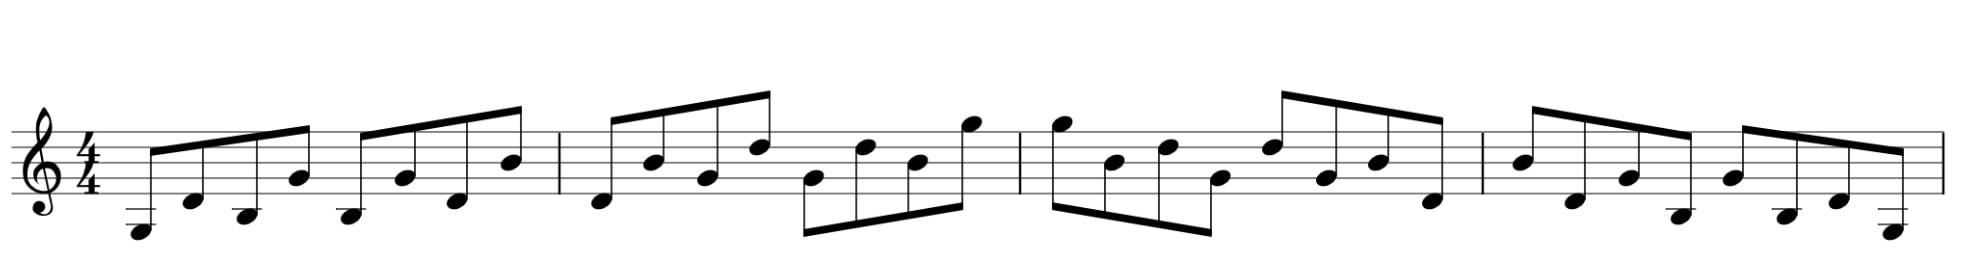 G major broken chord alternative pattern